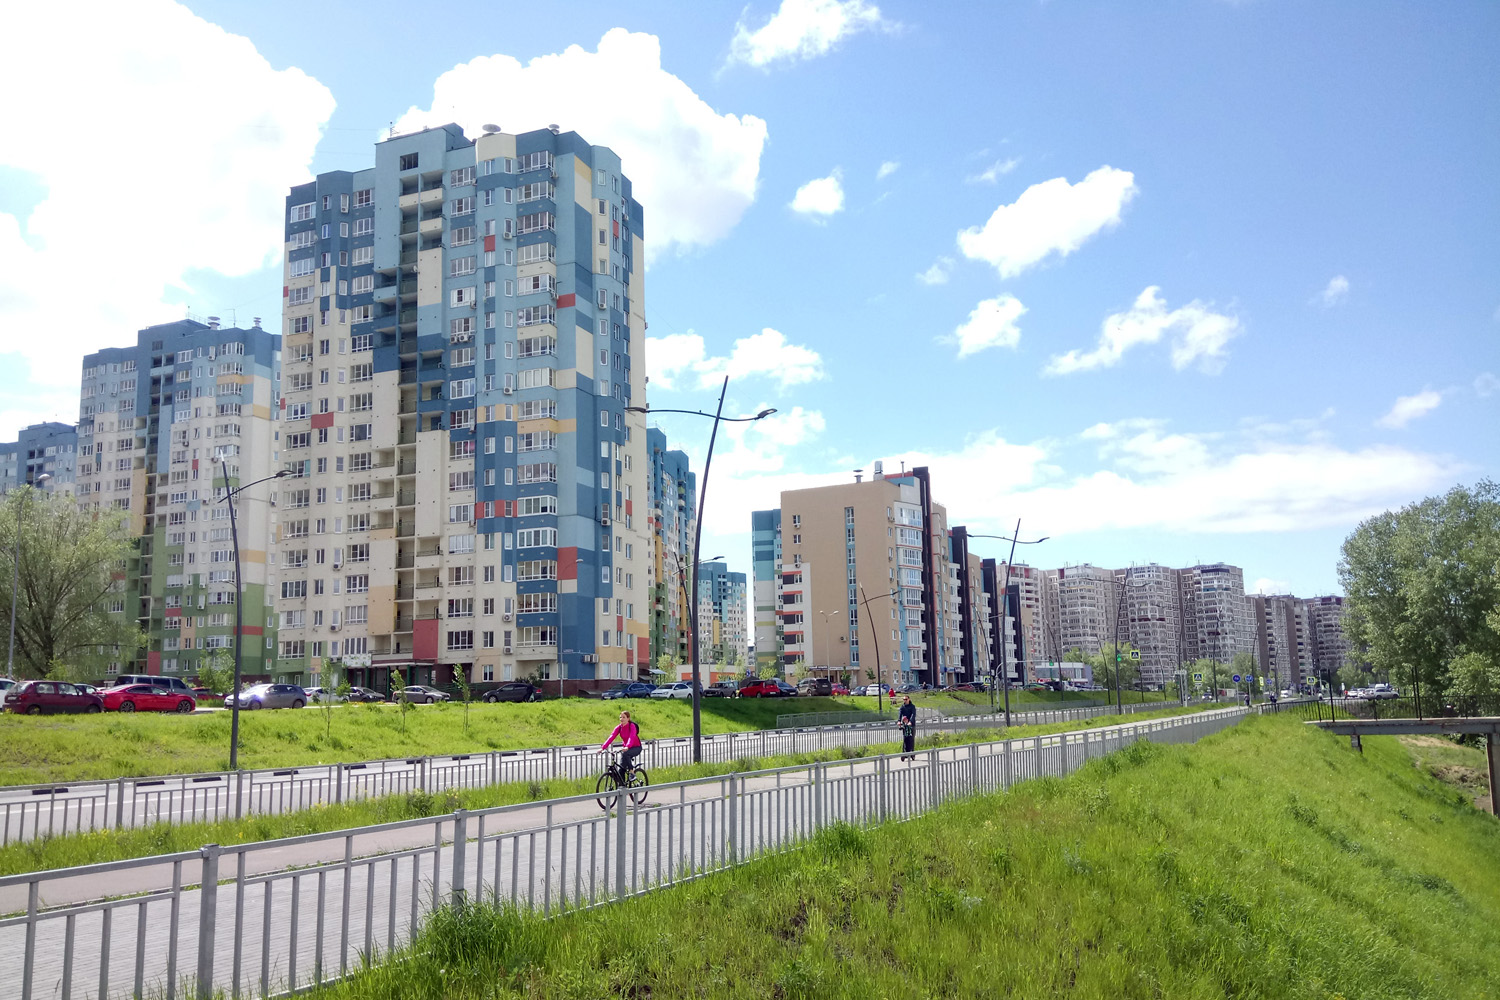 Комплексному развитию территорий в Ростове дали «зеленый свет»